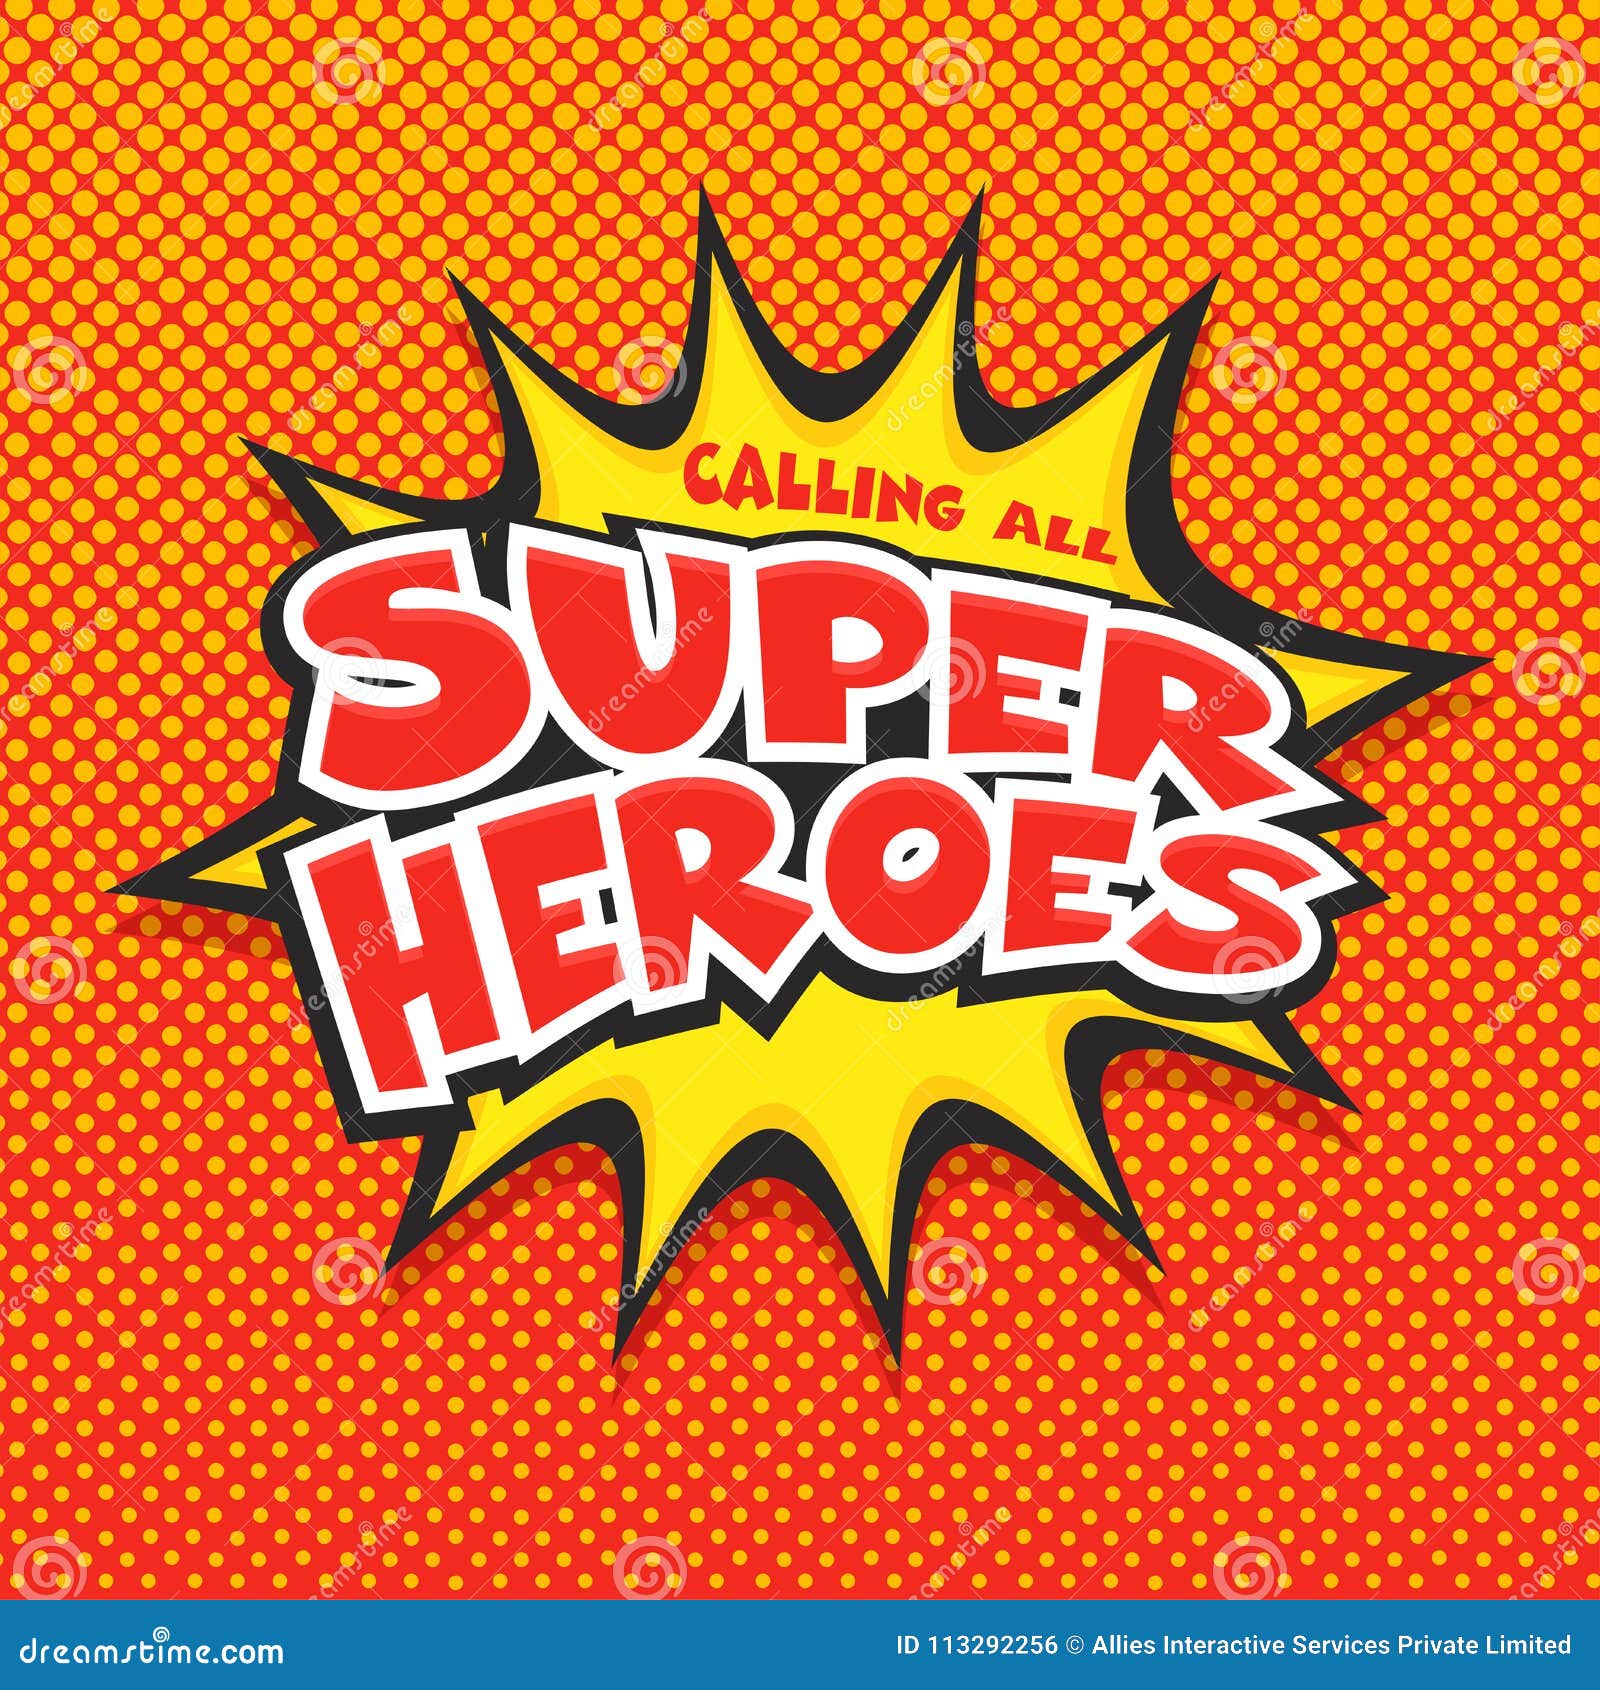 calling all super heroes, pop-art.